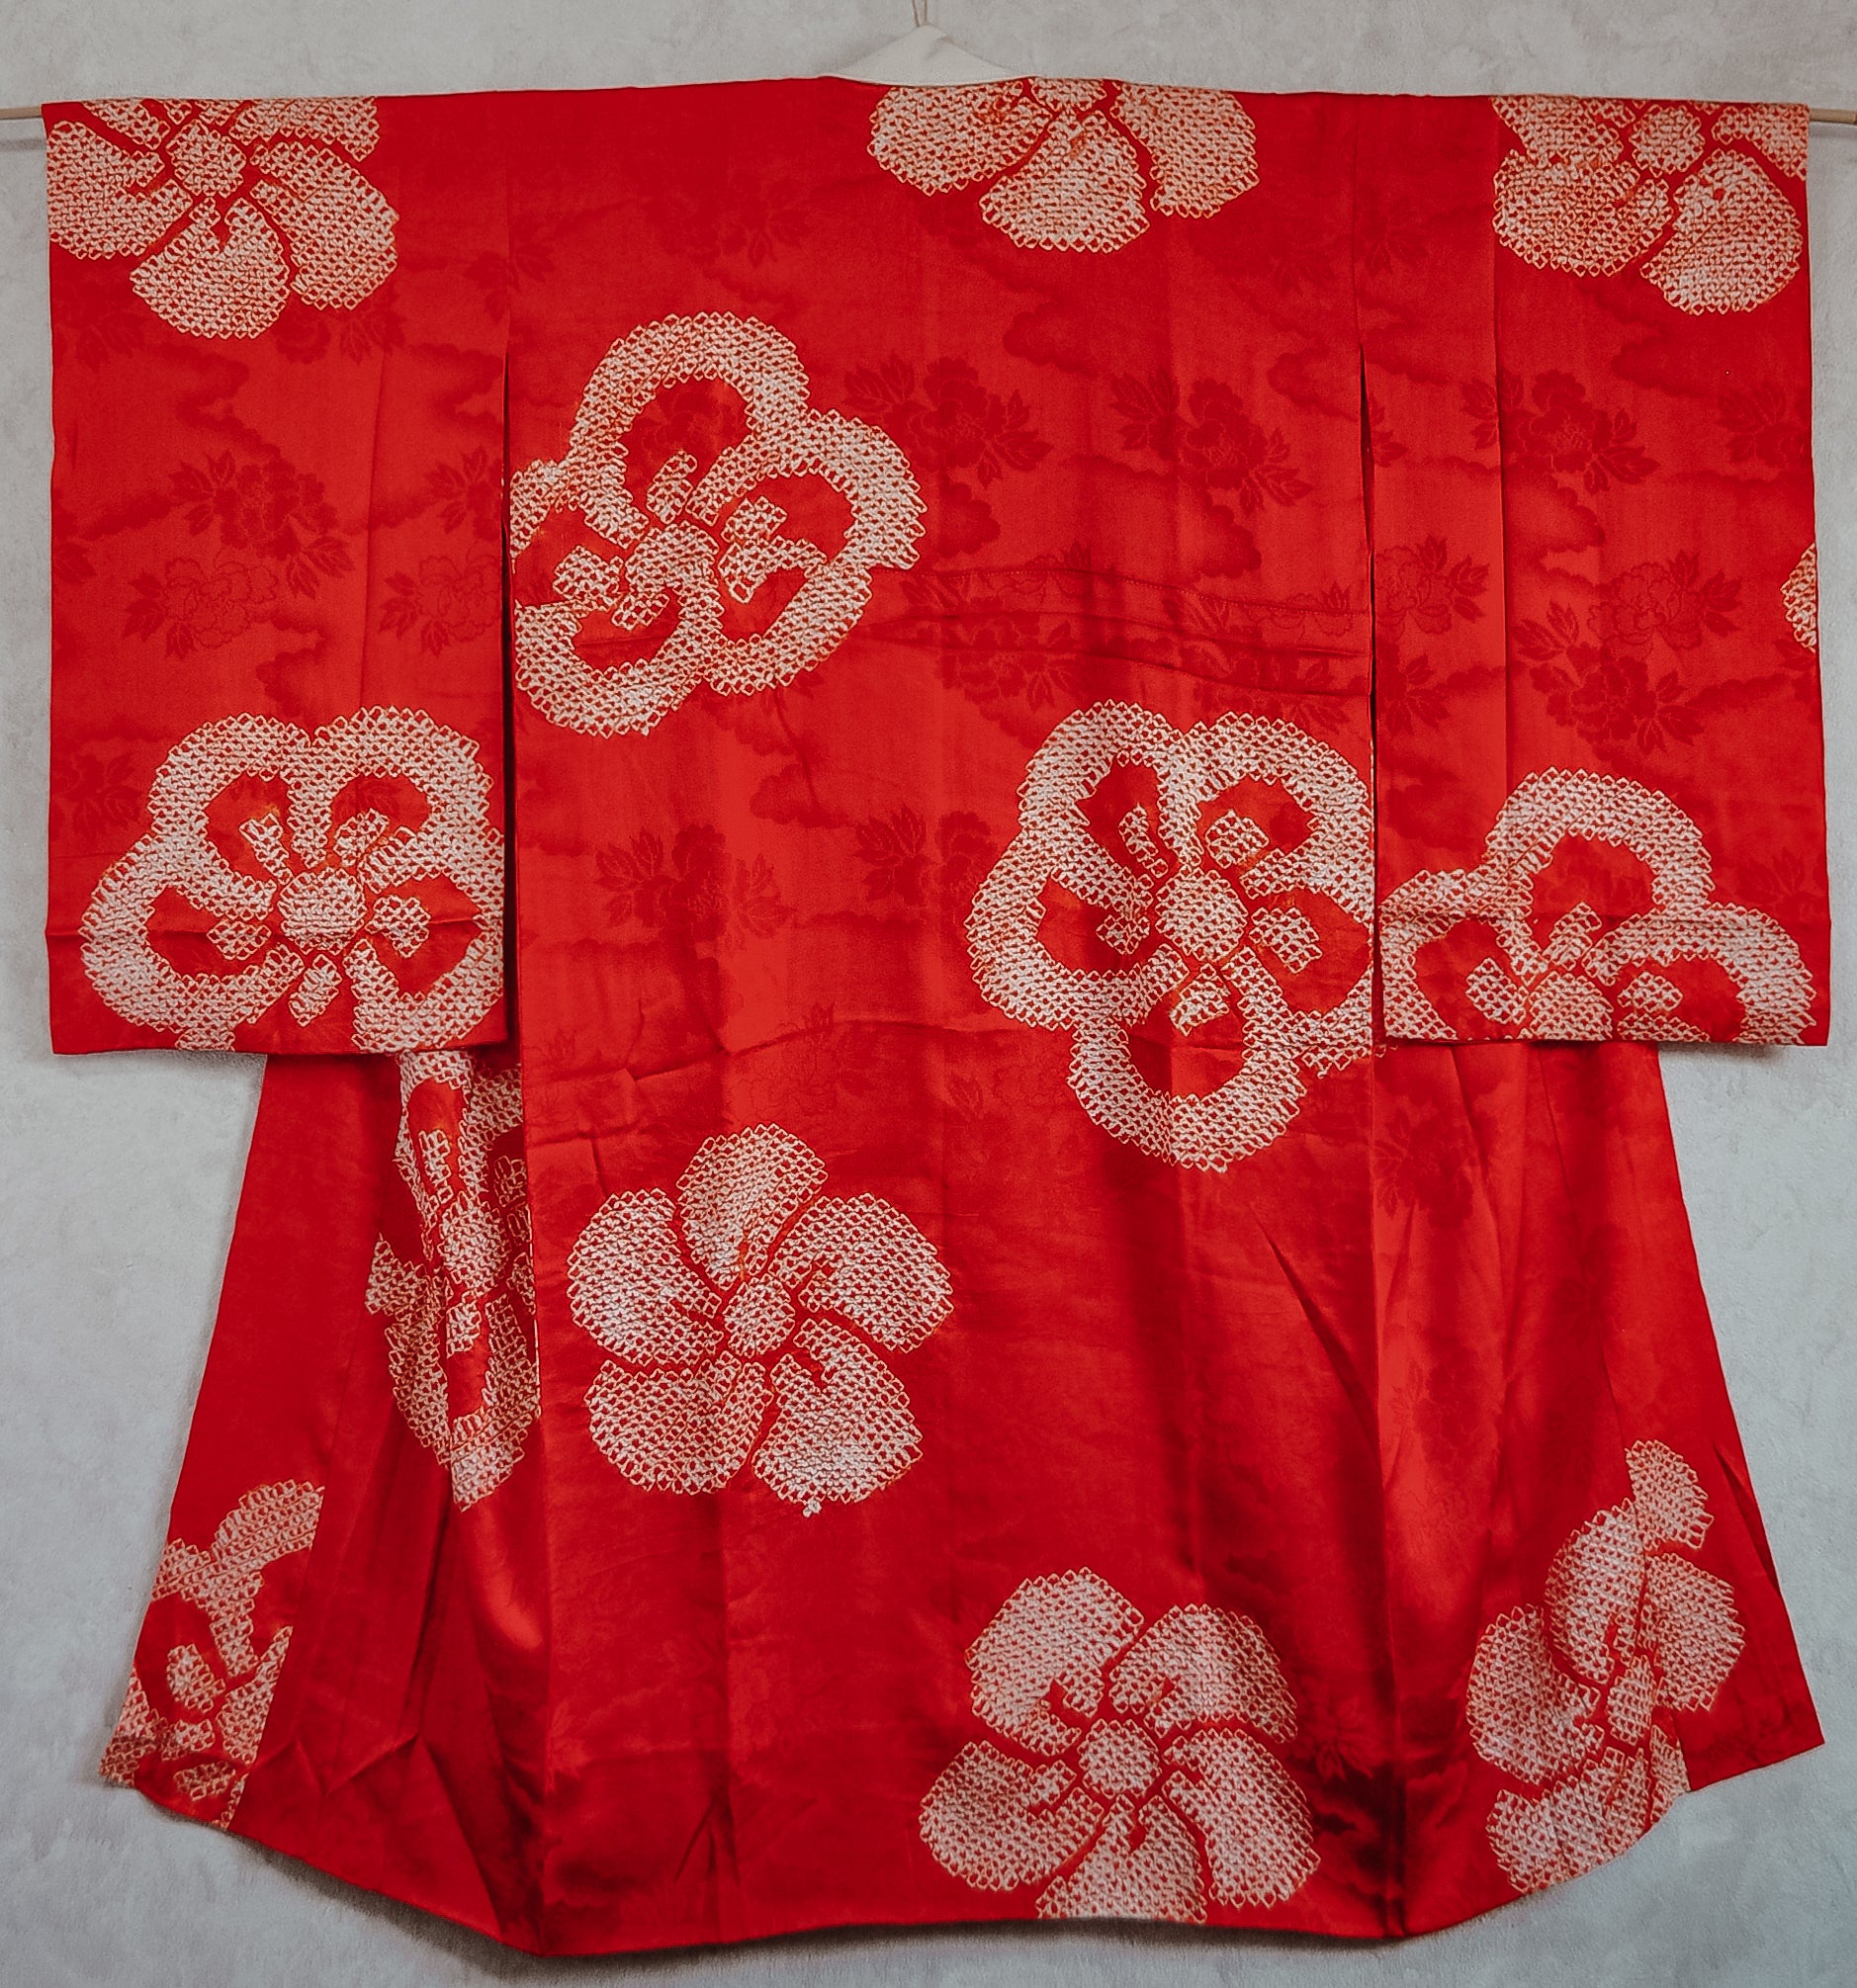 Super Bloom Cherry Blossom Shibori Antique Rinza Silk Juban Kimono